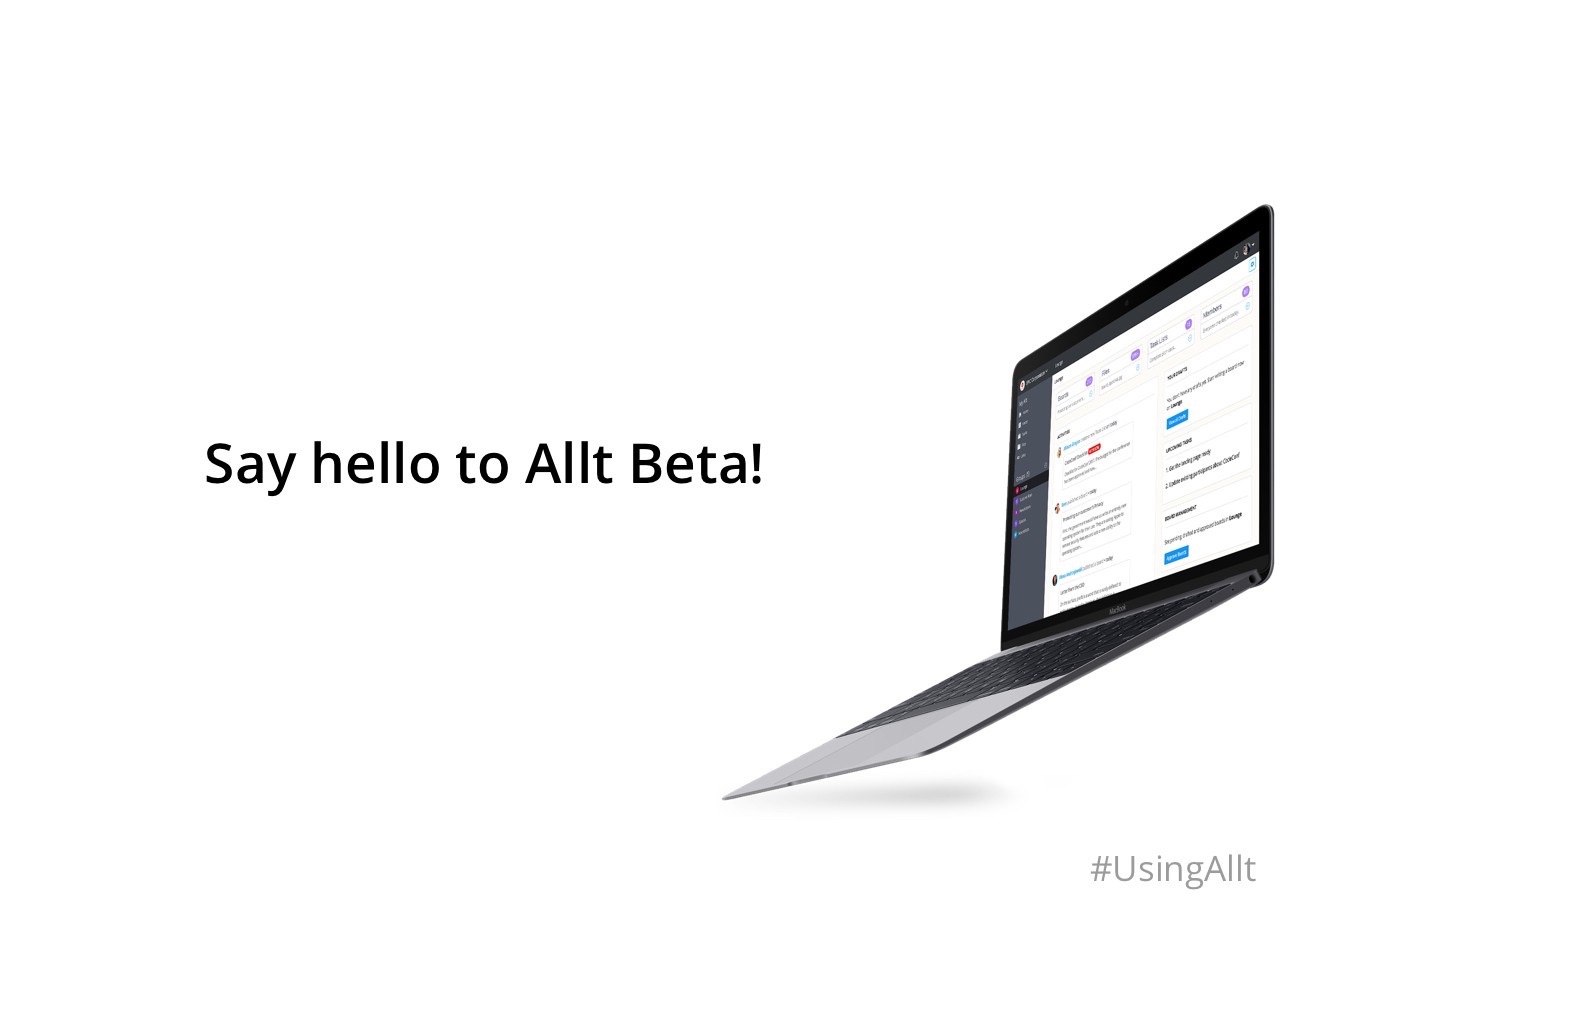 Say hello to Allt Beta